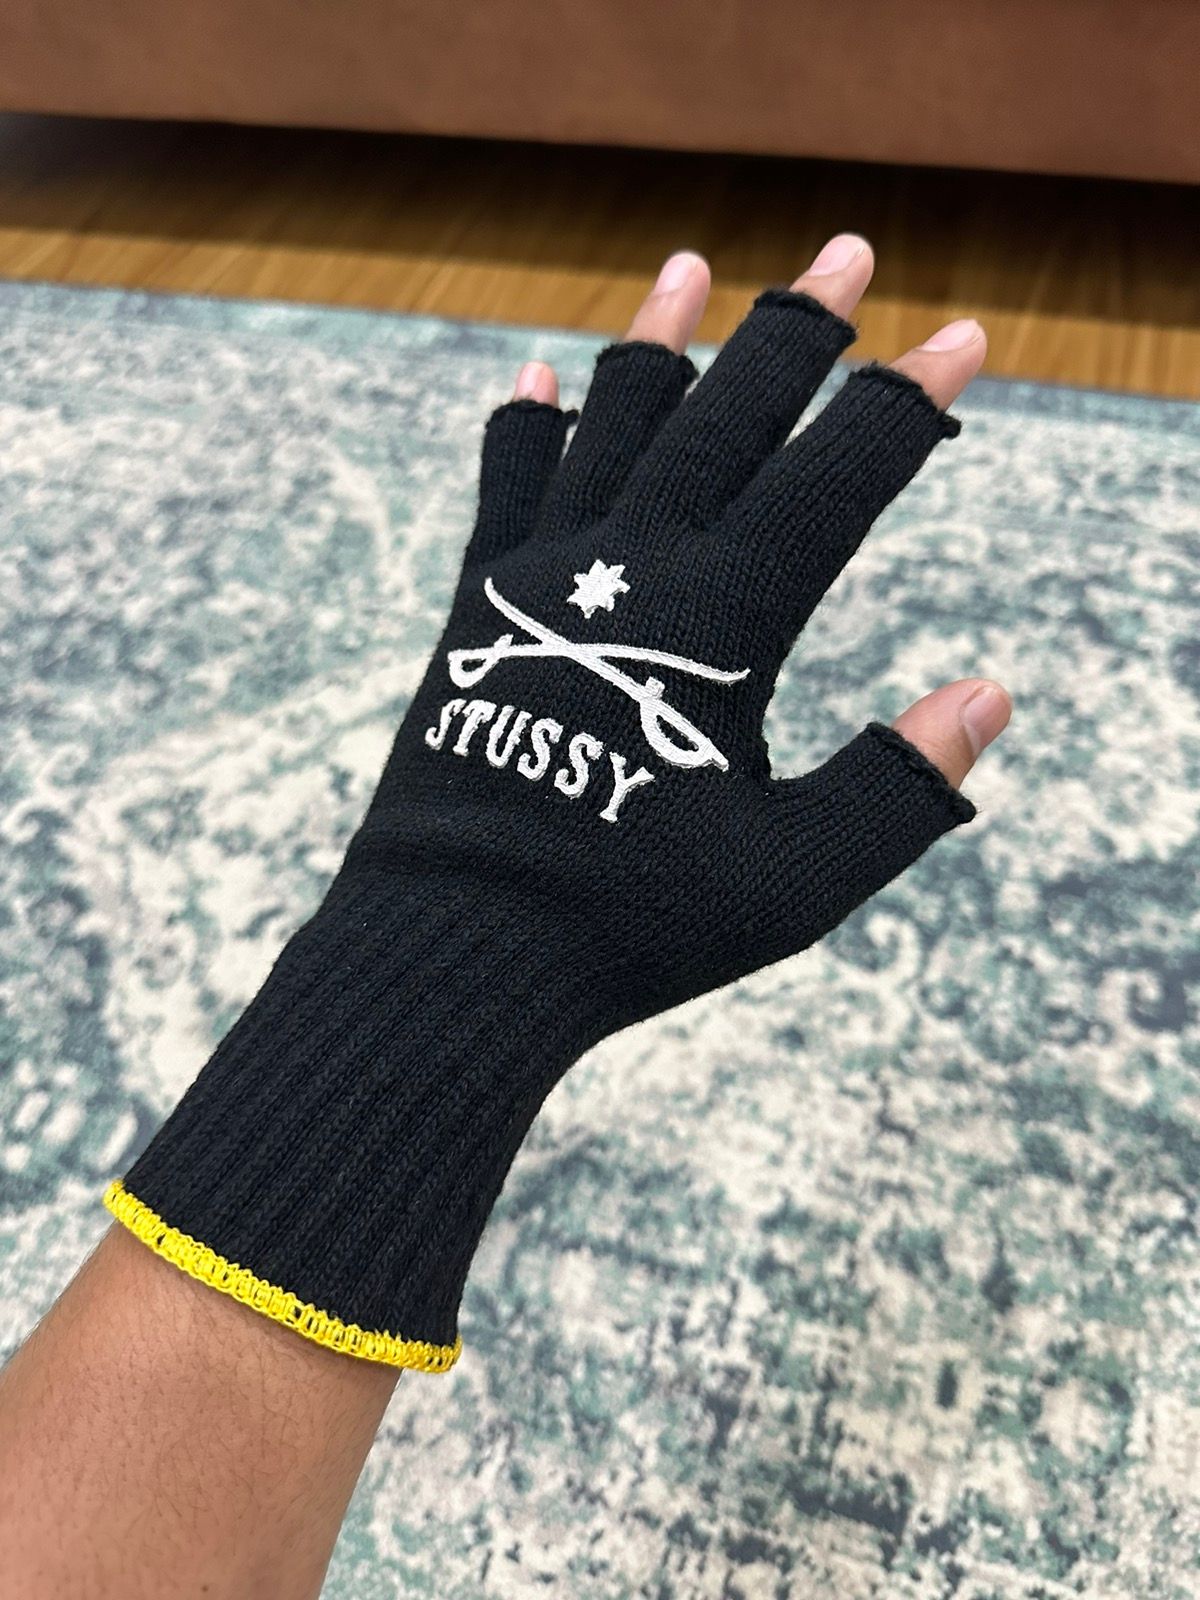 Stussy Sword Fingerless Gloves Black Yellow (Japan Only) - 4